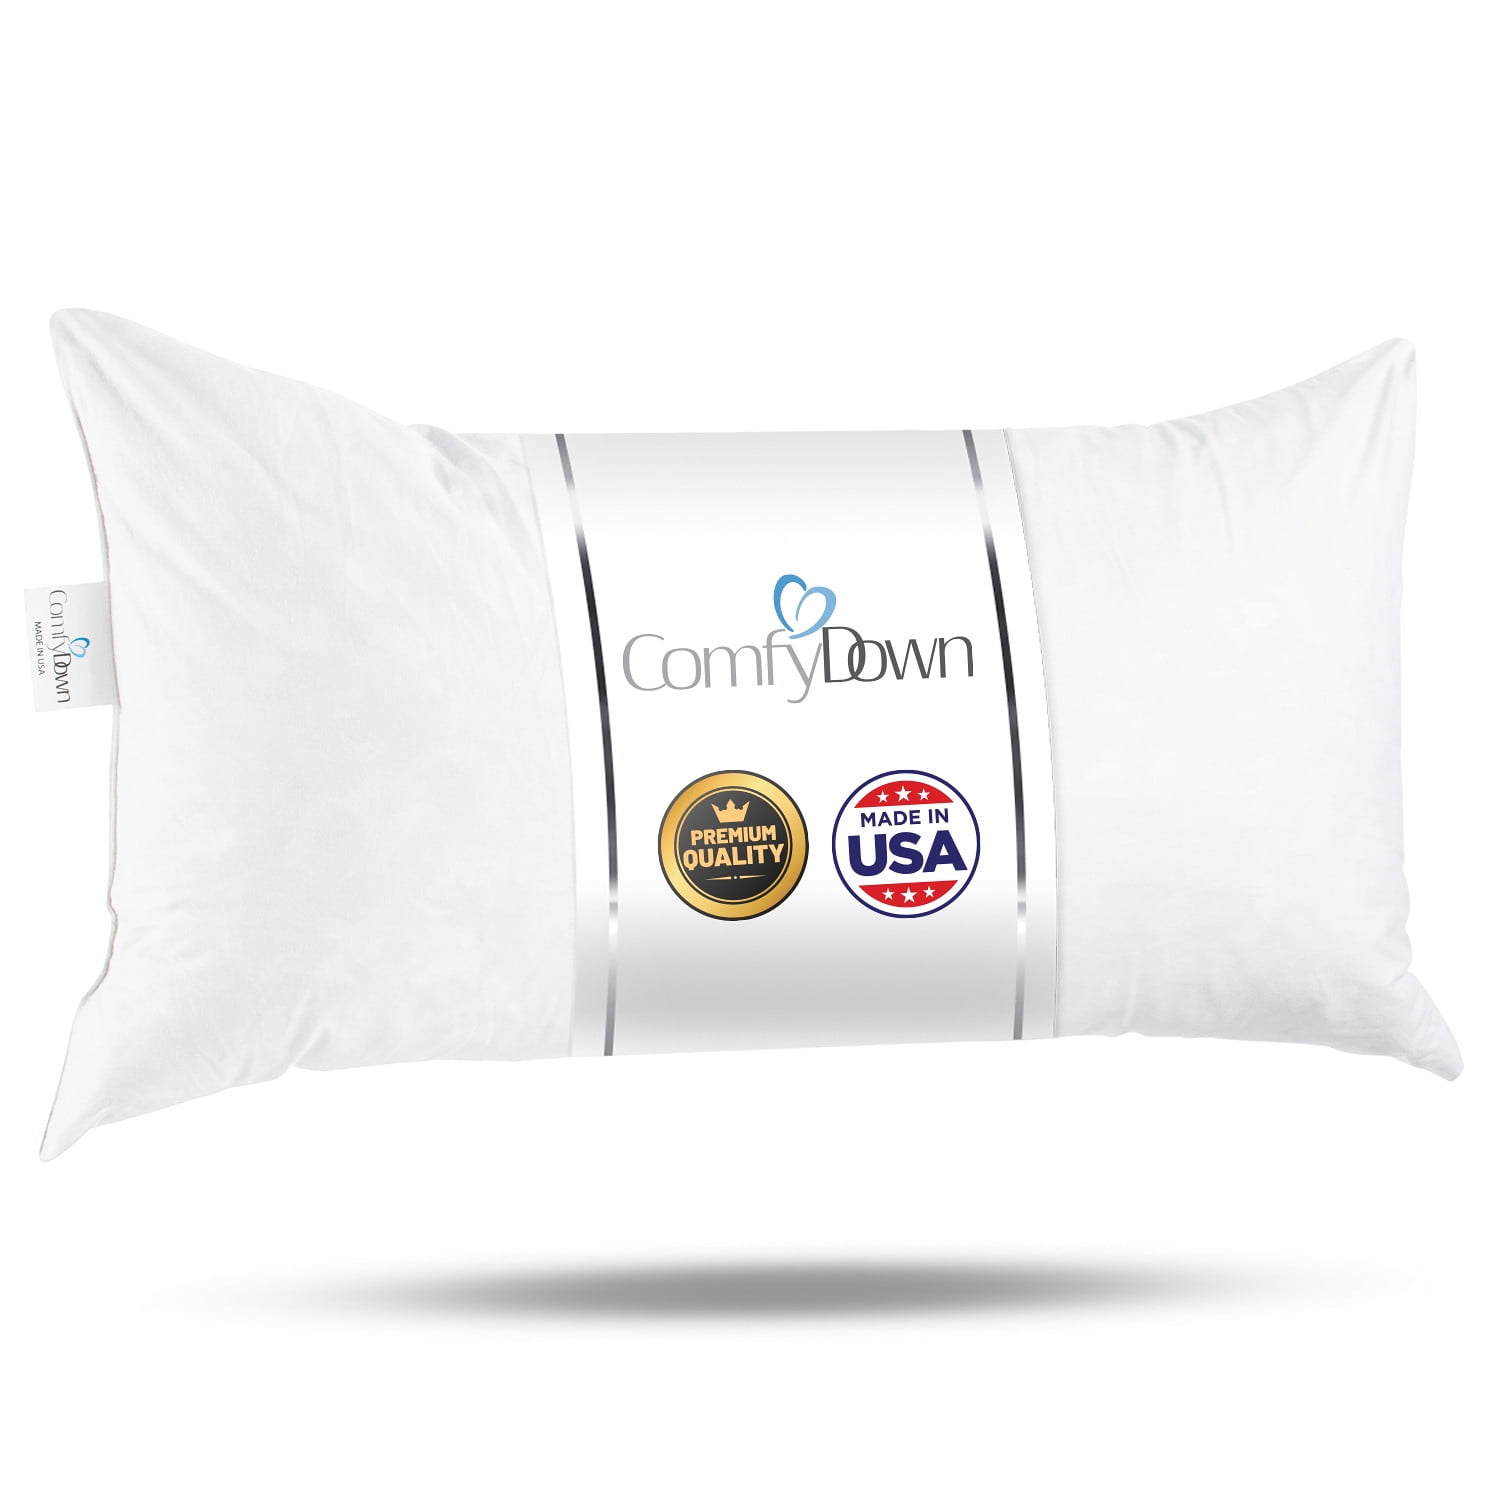 14x22 Pillow Insert Lumbar Pillow Inserts Stuffing Decorative Pillows  Inserts Pillows for Sleeping Decorative Pillows for Bed Throw Pillow Insert  450g